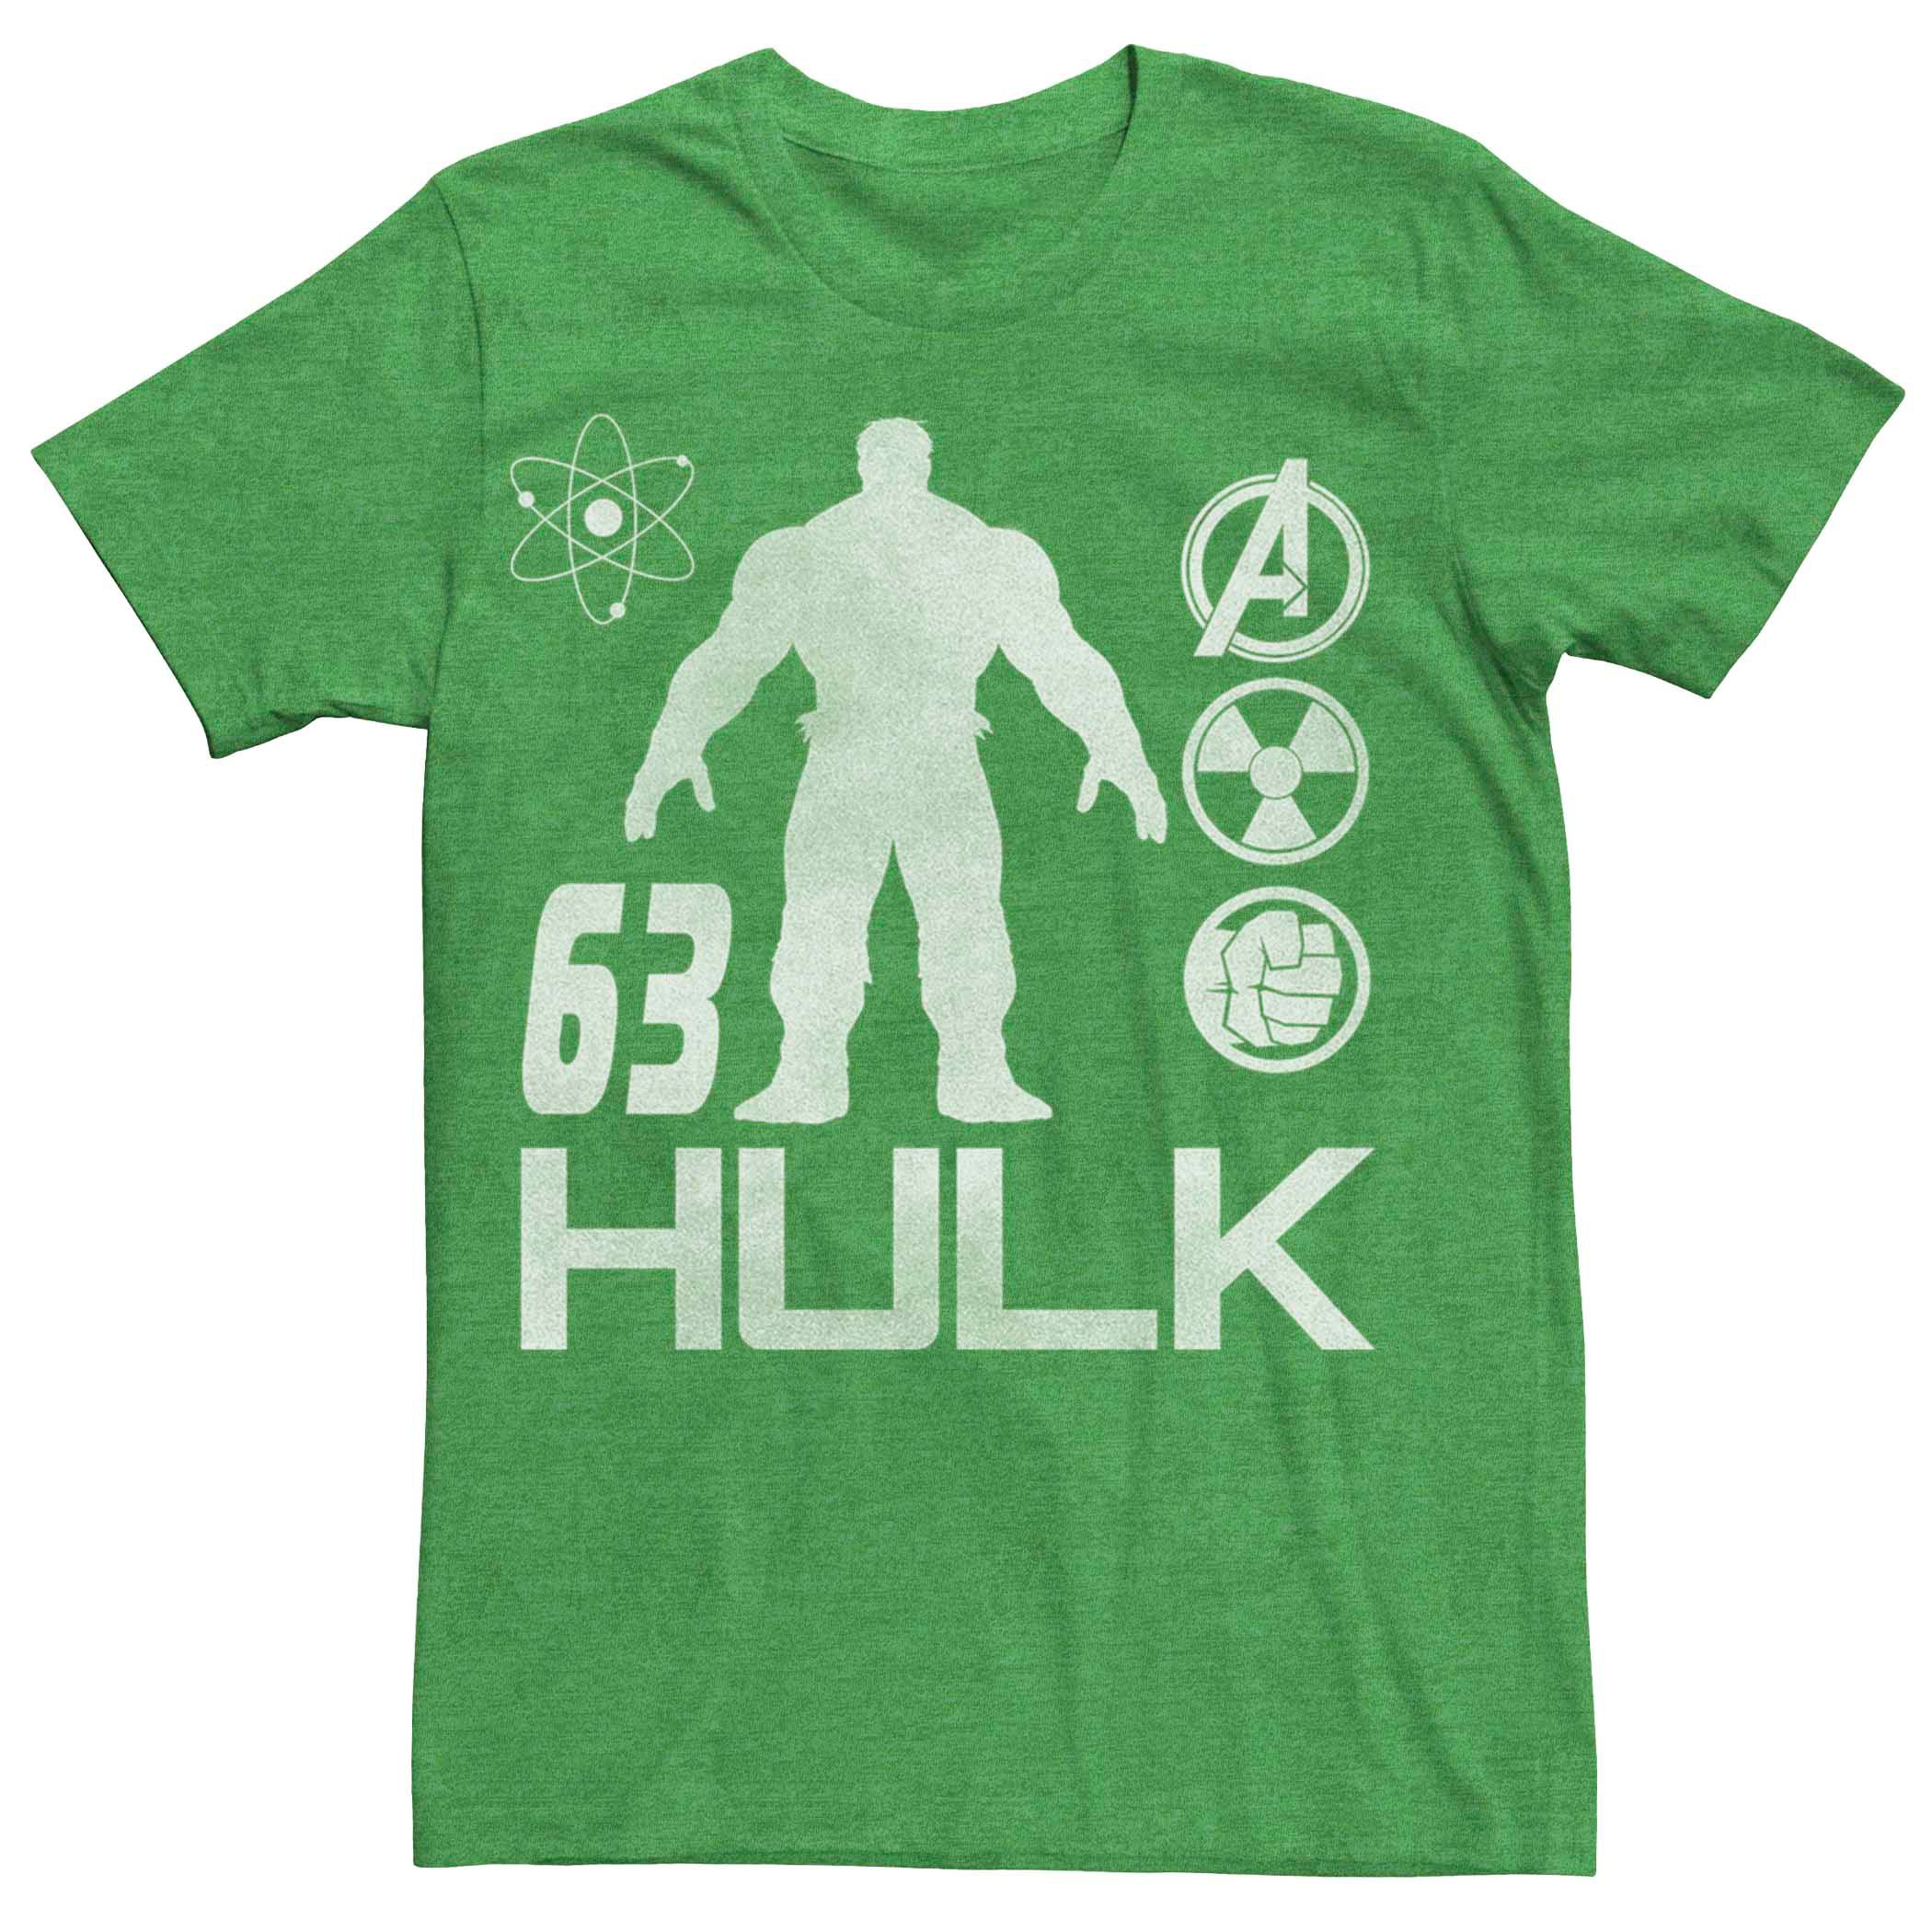 Мужская футболка с изображением научного символа силуэта Халка Marvel Licensed Character